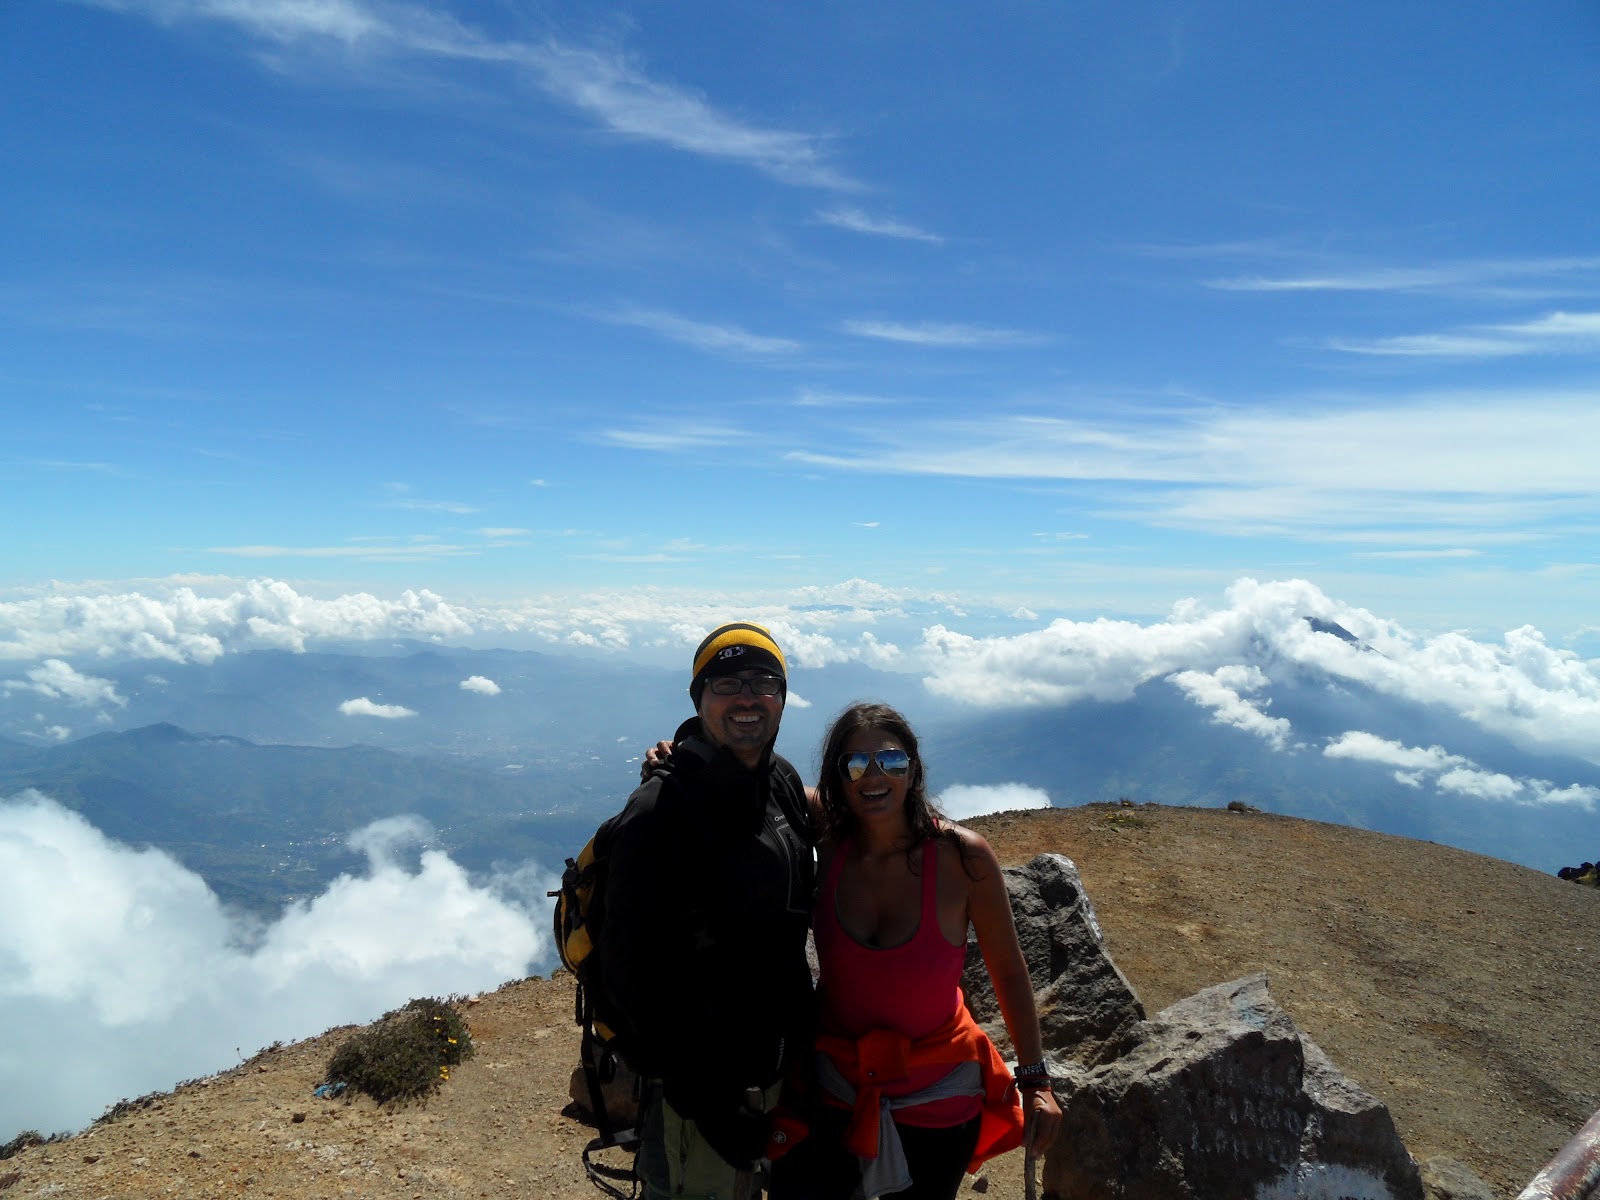 Subir o VULCÃO ACATENANGO (3975 m) e contemplar o esplendor de um país | Guatemala